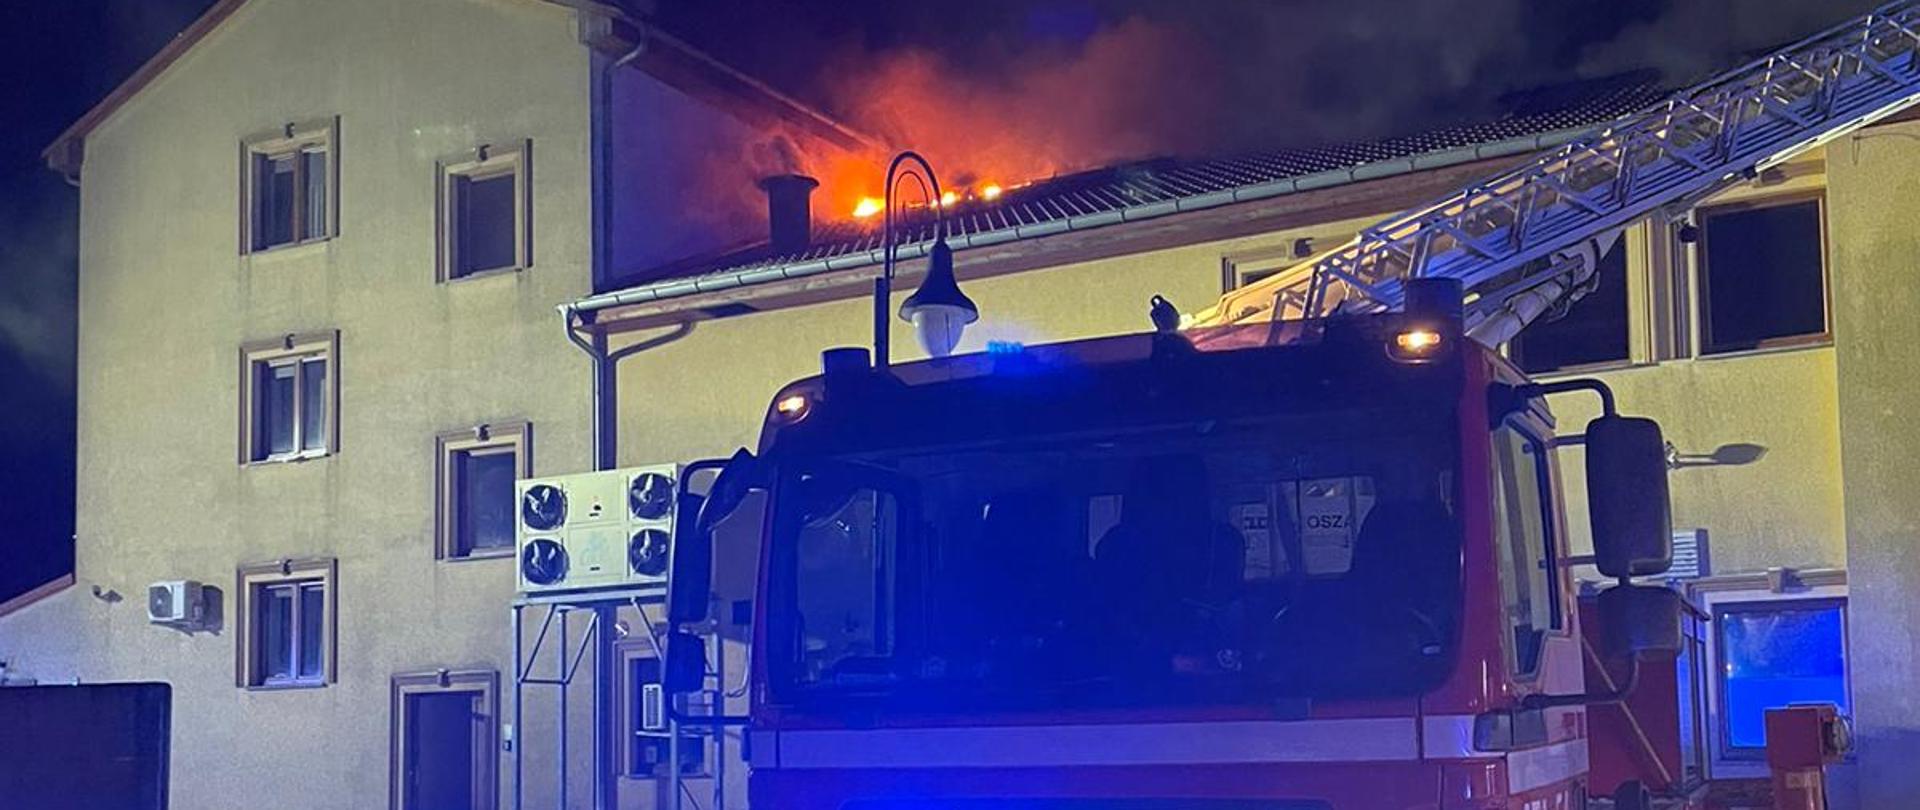 Pożar poddasza w budynku restauracyjno - hotelowym. Na zdjęciu podnośnik SHD-23 podczas działań gaśniczych.